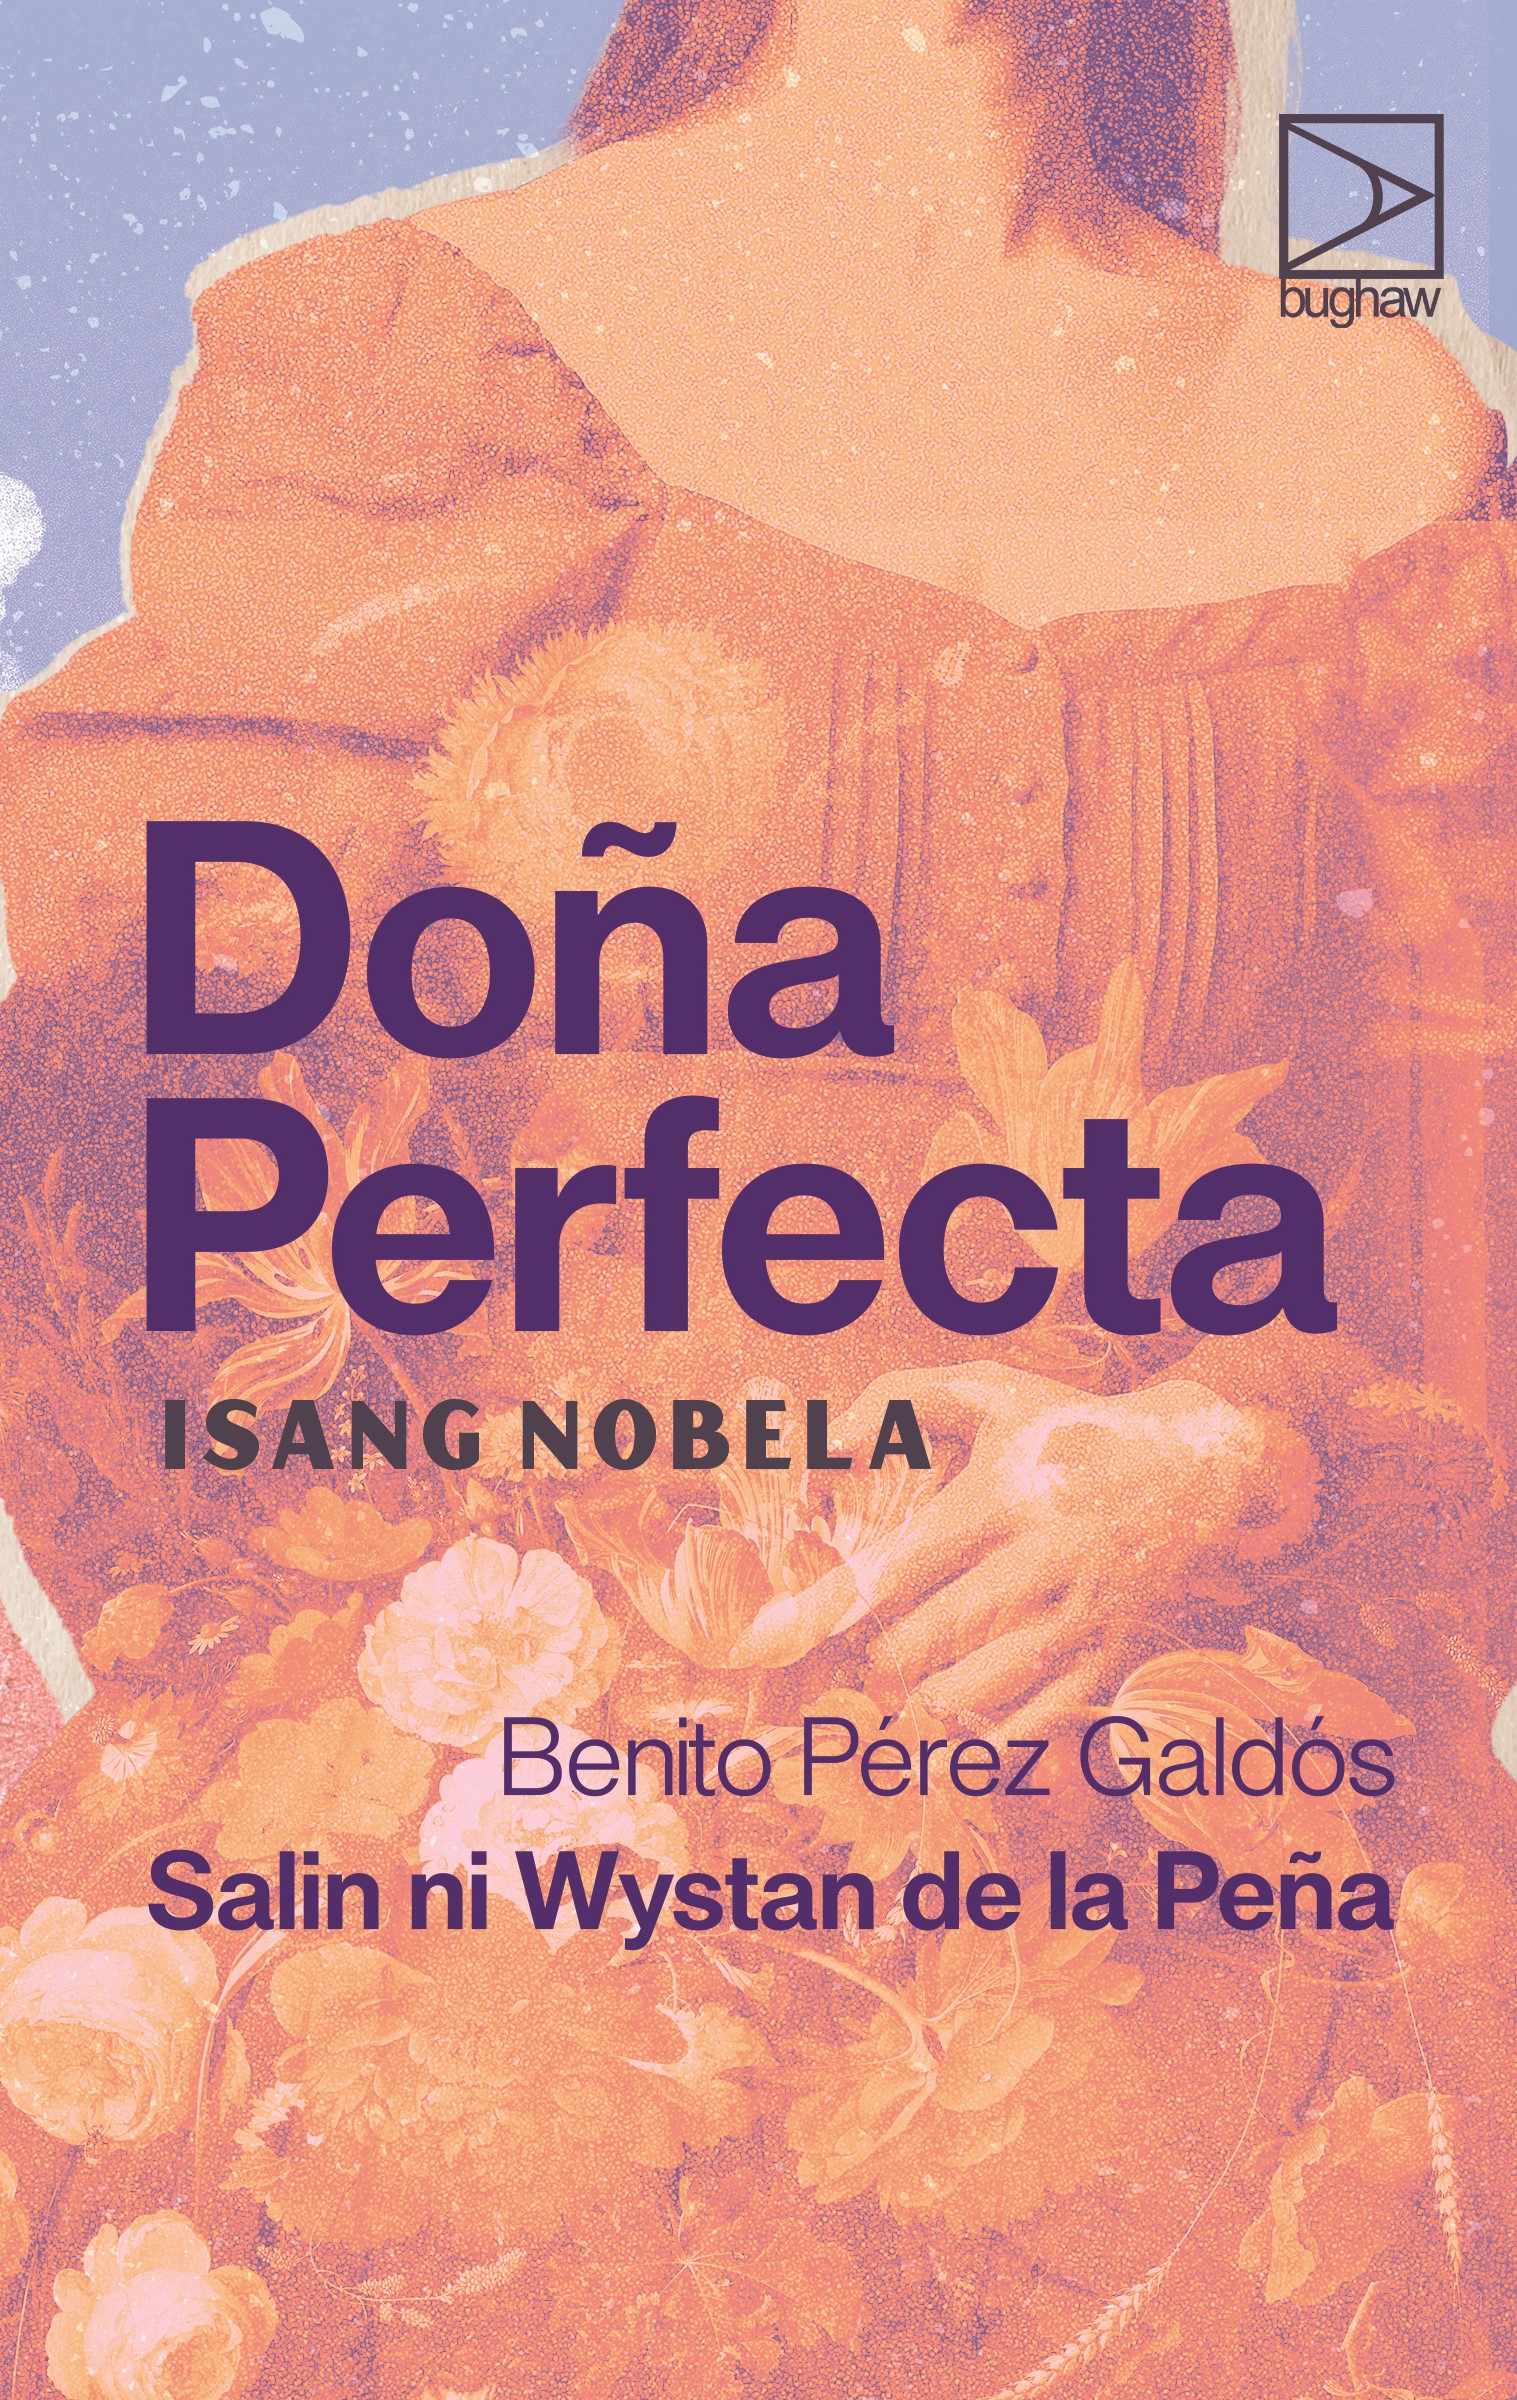 Doña Perfecta in Tagalog